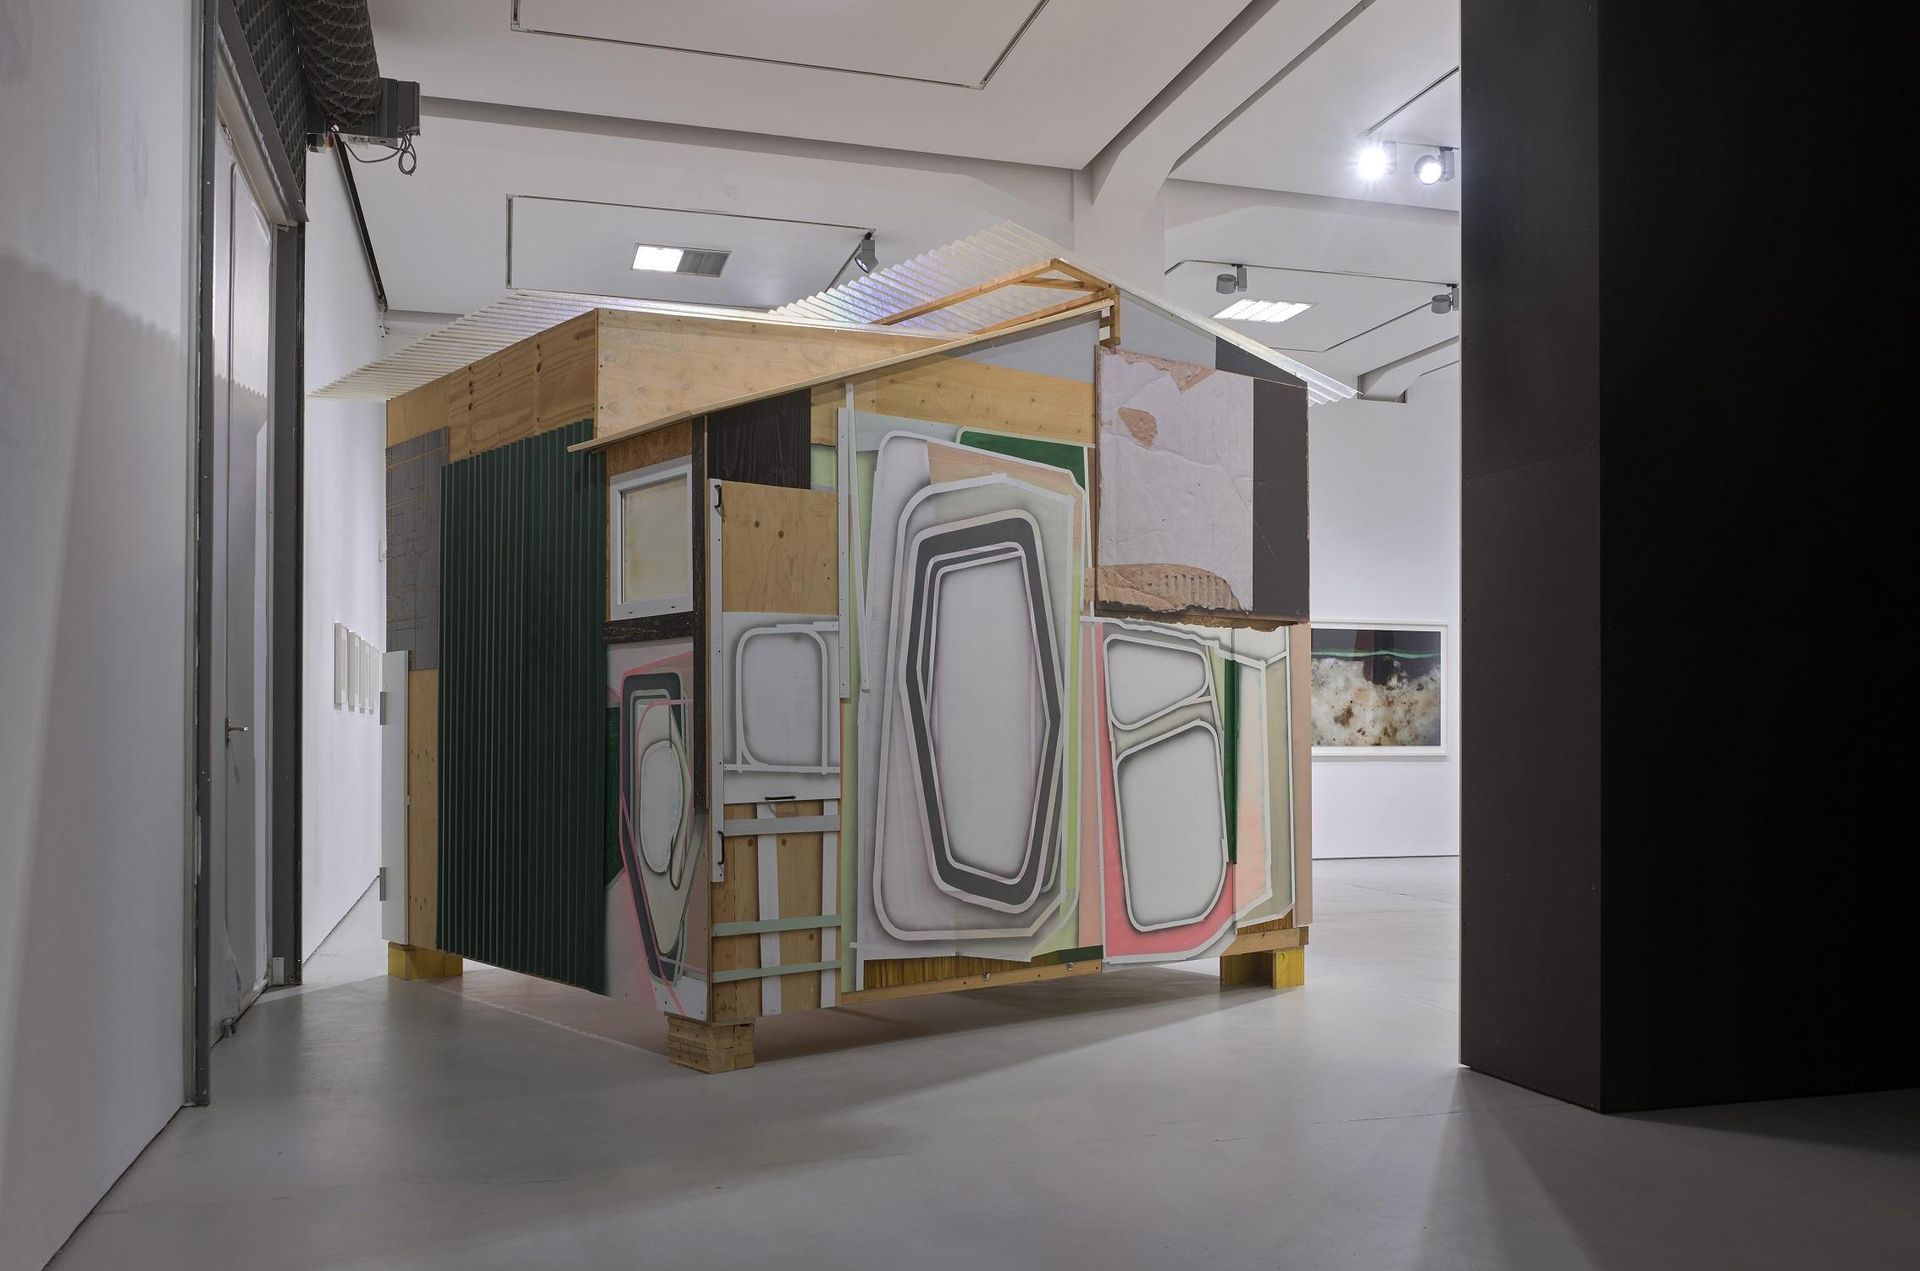 Wolfgang Ellenrieder, Moderne Hütte, 2019, Installation view in KAI 10 | ARTHENA FOUNDATION, Courtesy the artist, Photo: Achim Kukulies, Düsseldorf